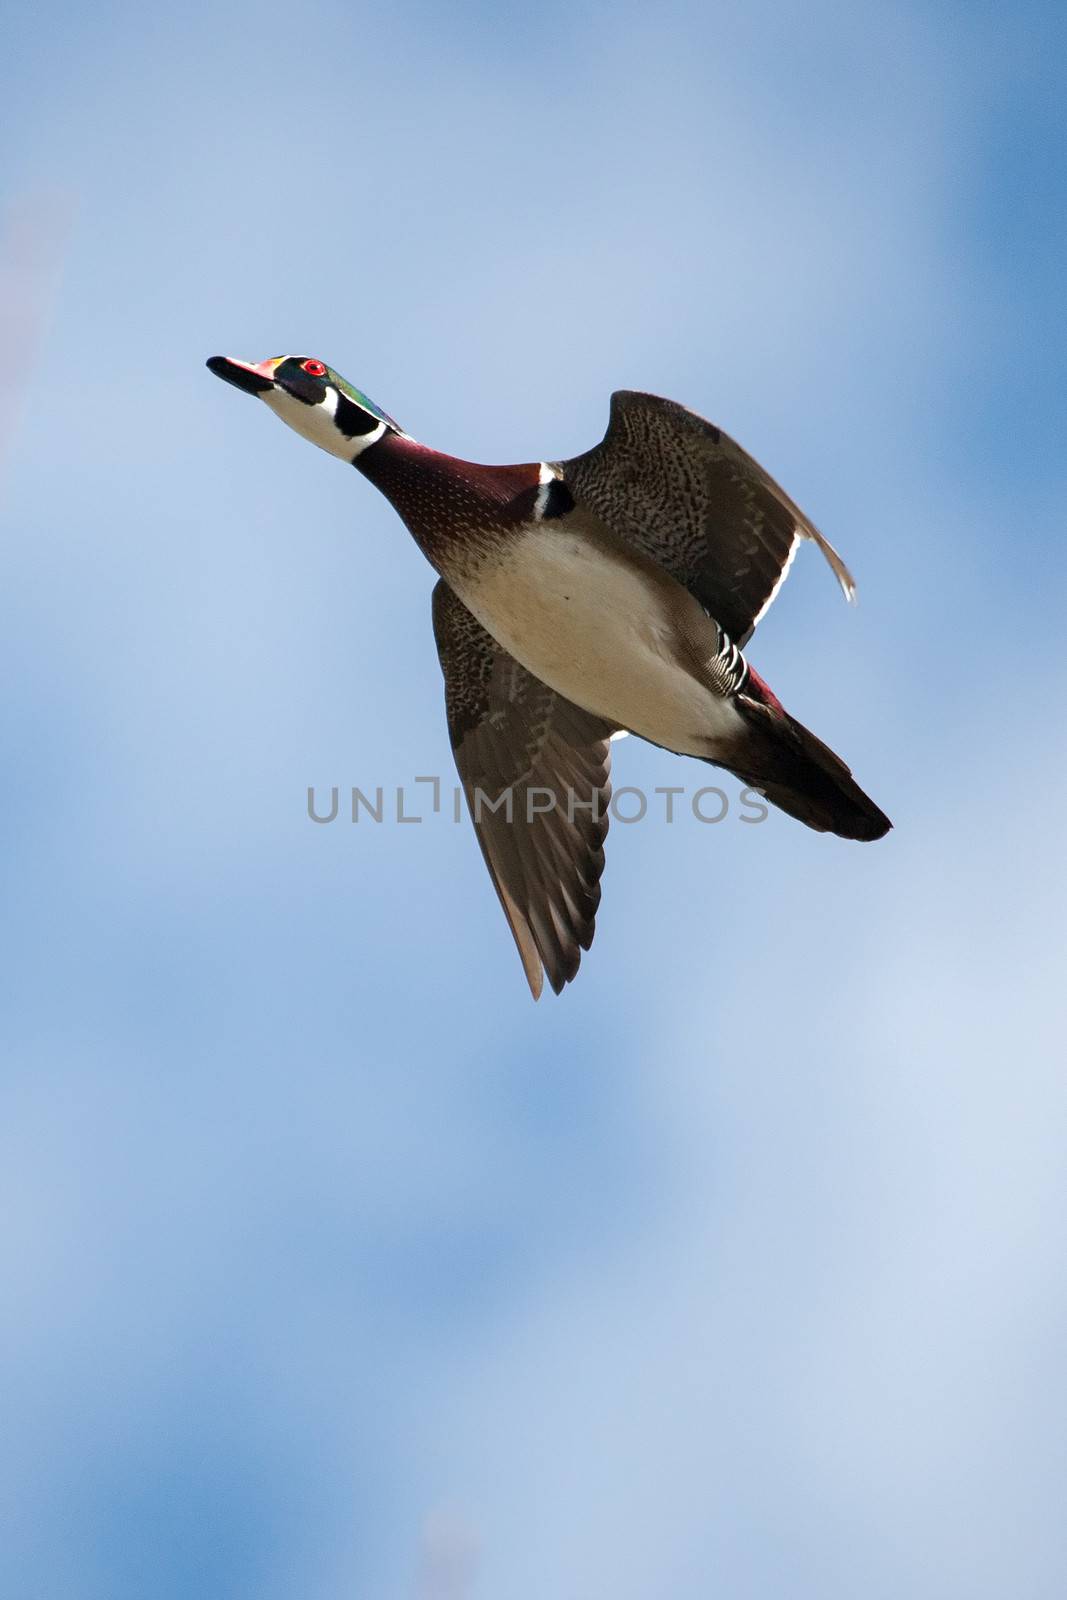 Male wood duck in flight by Coffee999